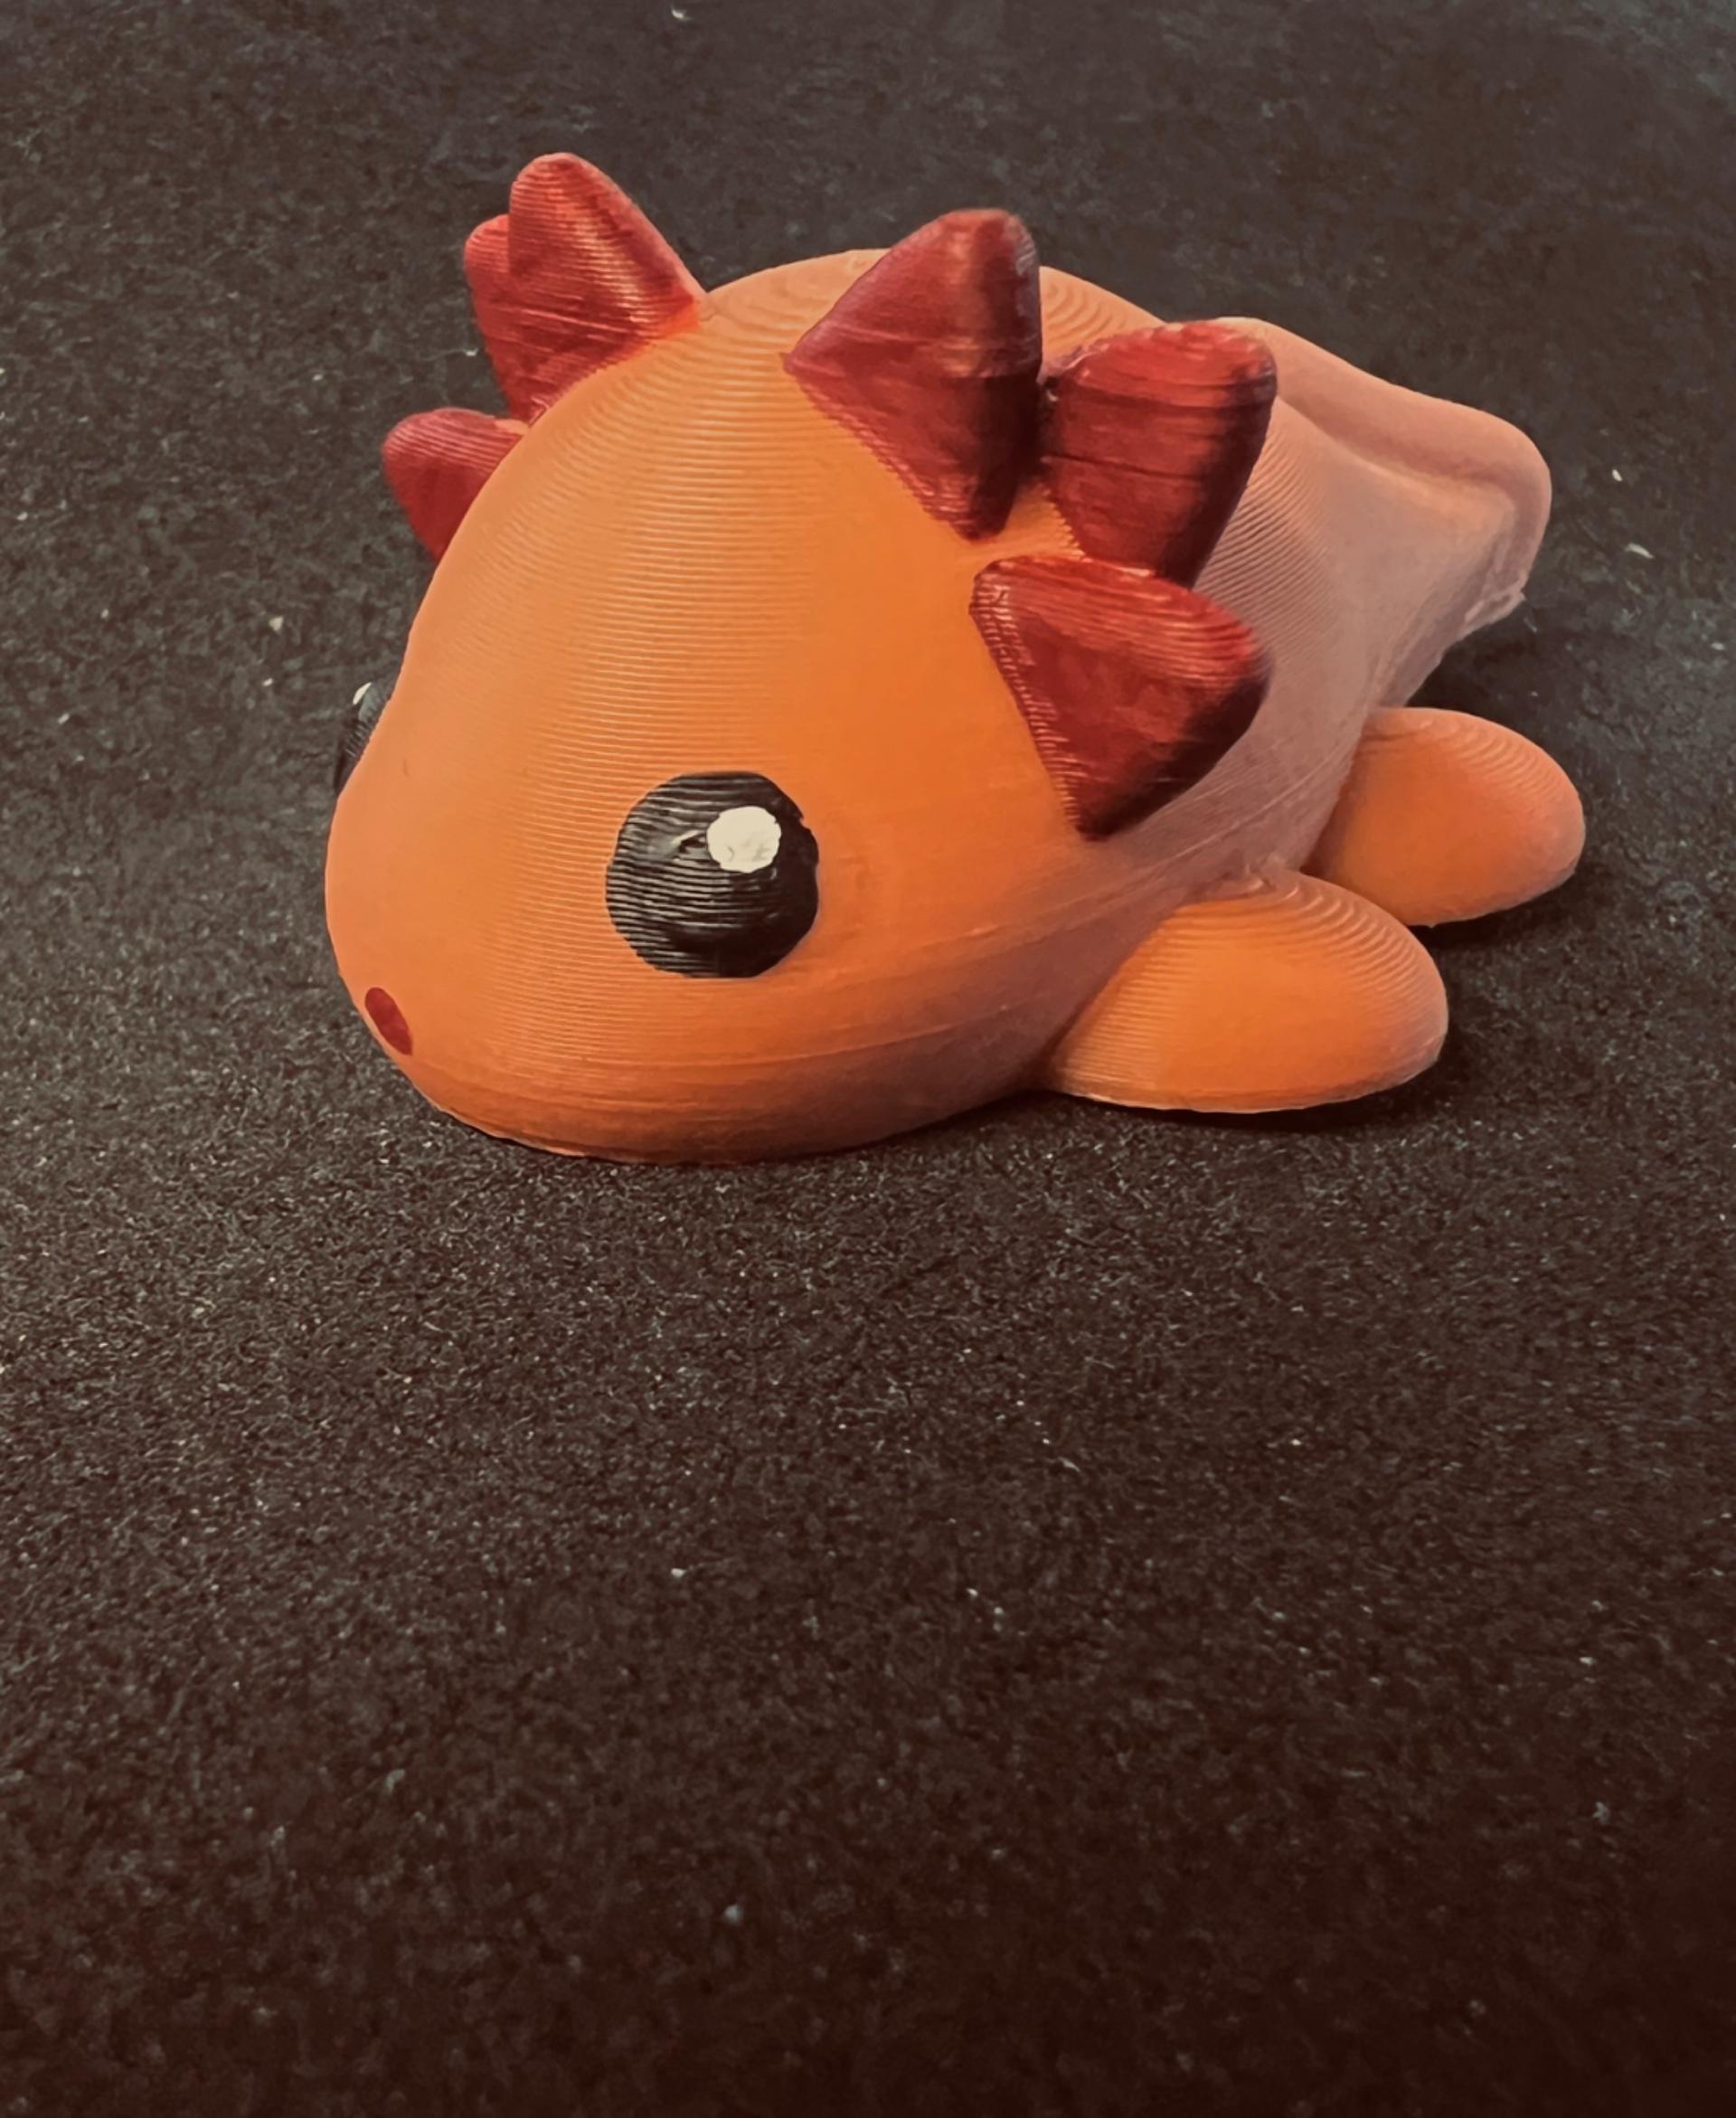 Baby Axolotl - They’re so cute! - 3d model